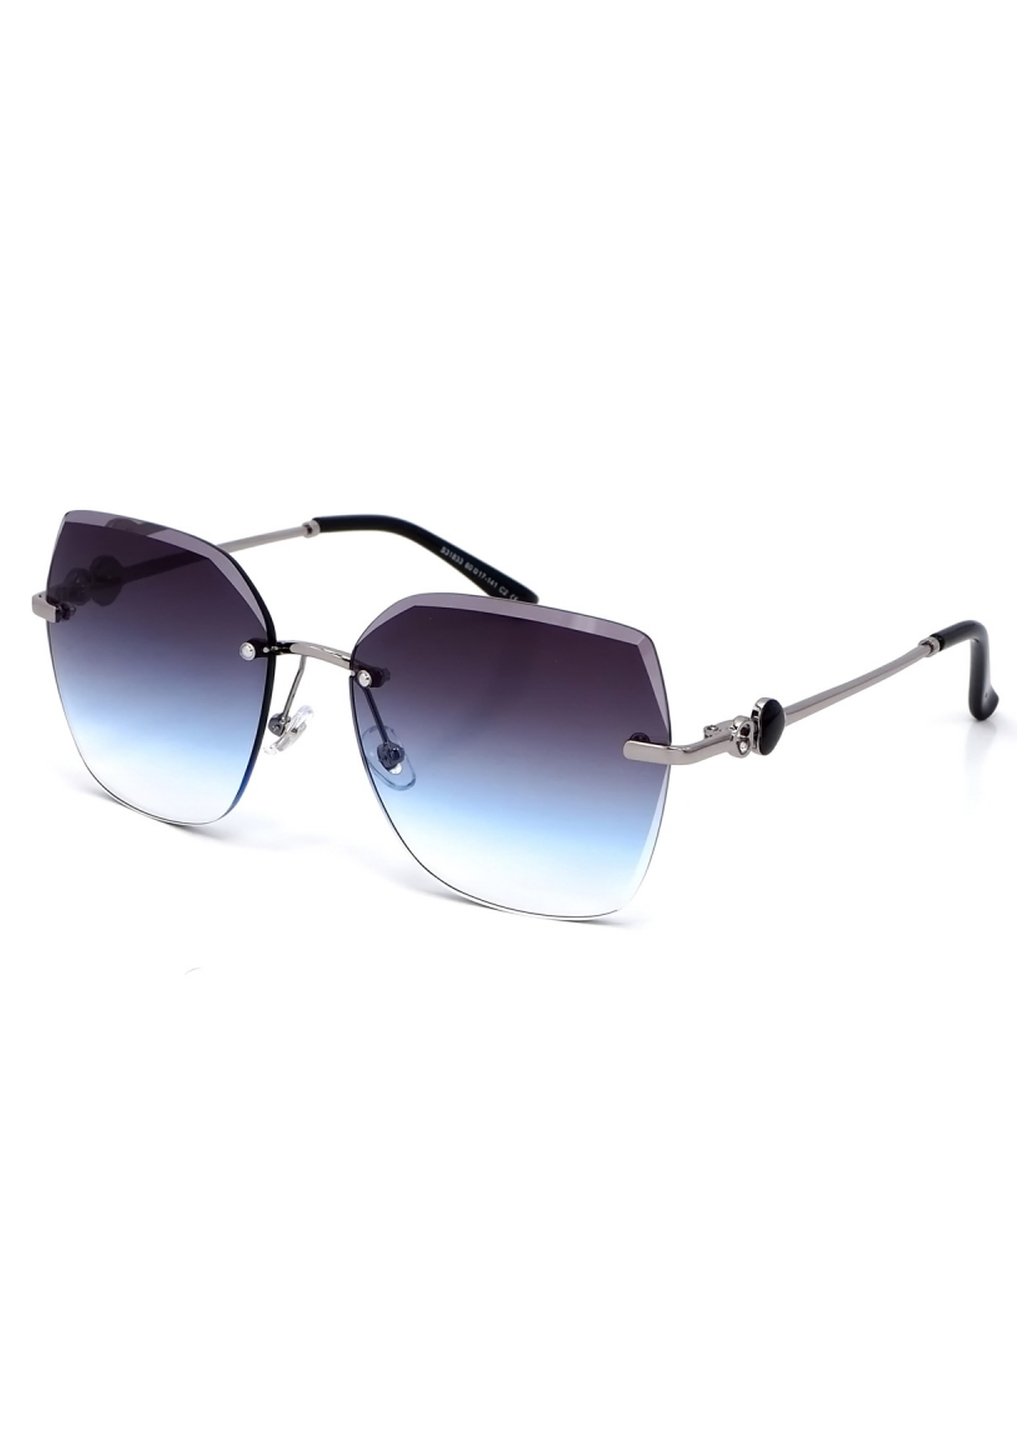 Купить Женские солнцезащитные очки Merlini с поляризацией S31833 117089 - Серый в интернет-магазине